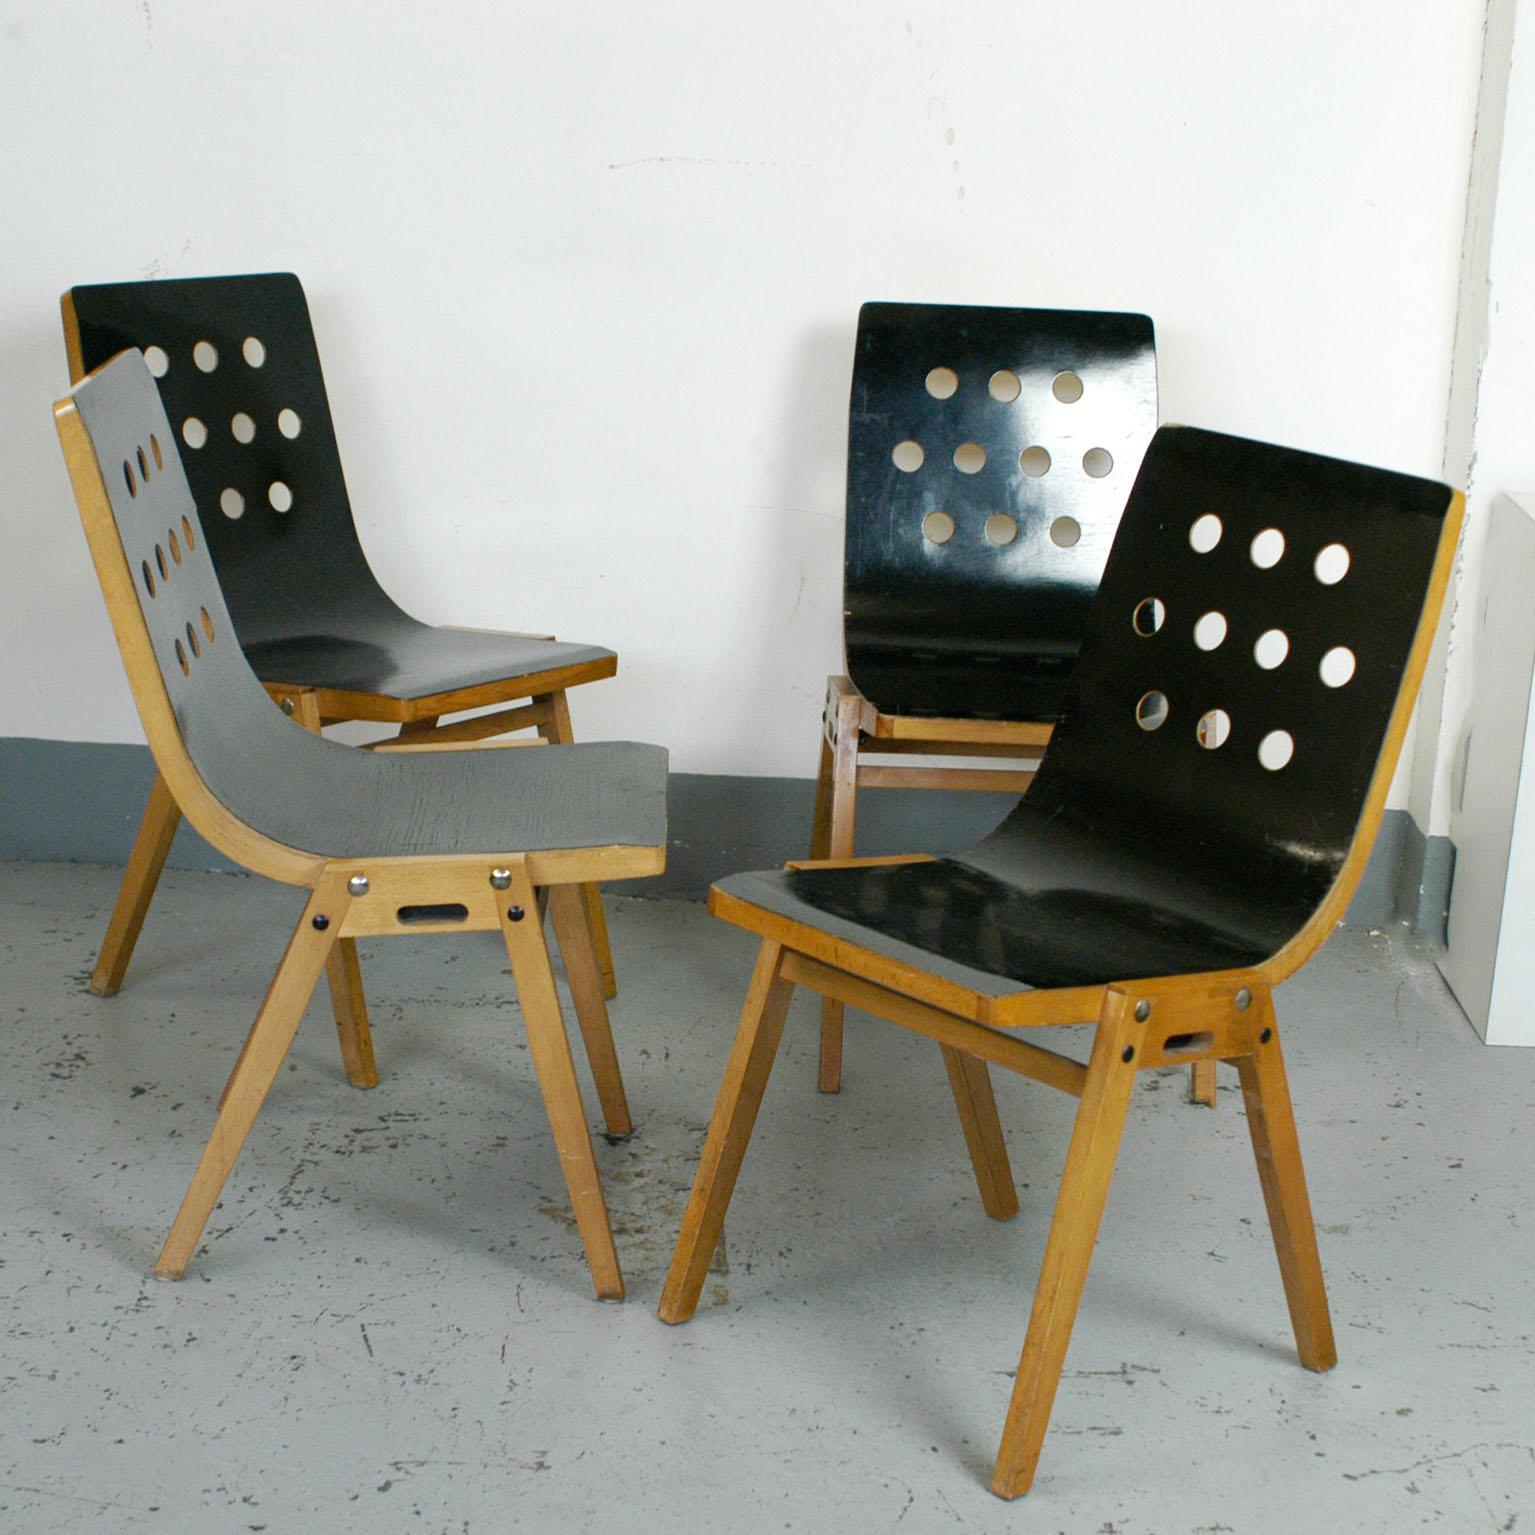 Ein Satz von vier stapelbaren Stühlen, entworfen von Prof. Roland Rainer im Jahr 1951 und hergestellt von Emil & Alfred Pollak, Österreich, in den 1950er Jahren.
Roland Rainer verwendete diese Stühle für die Wiener Stadthalle in den Jahren